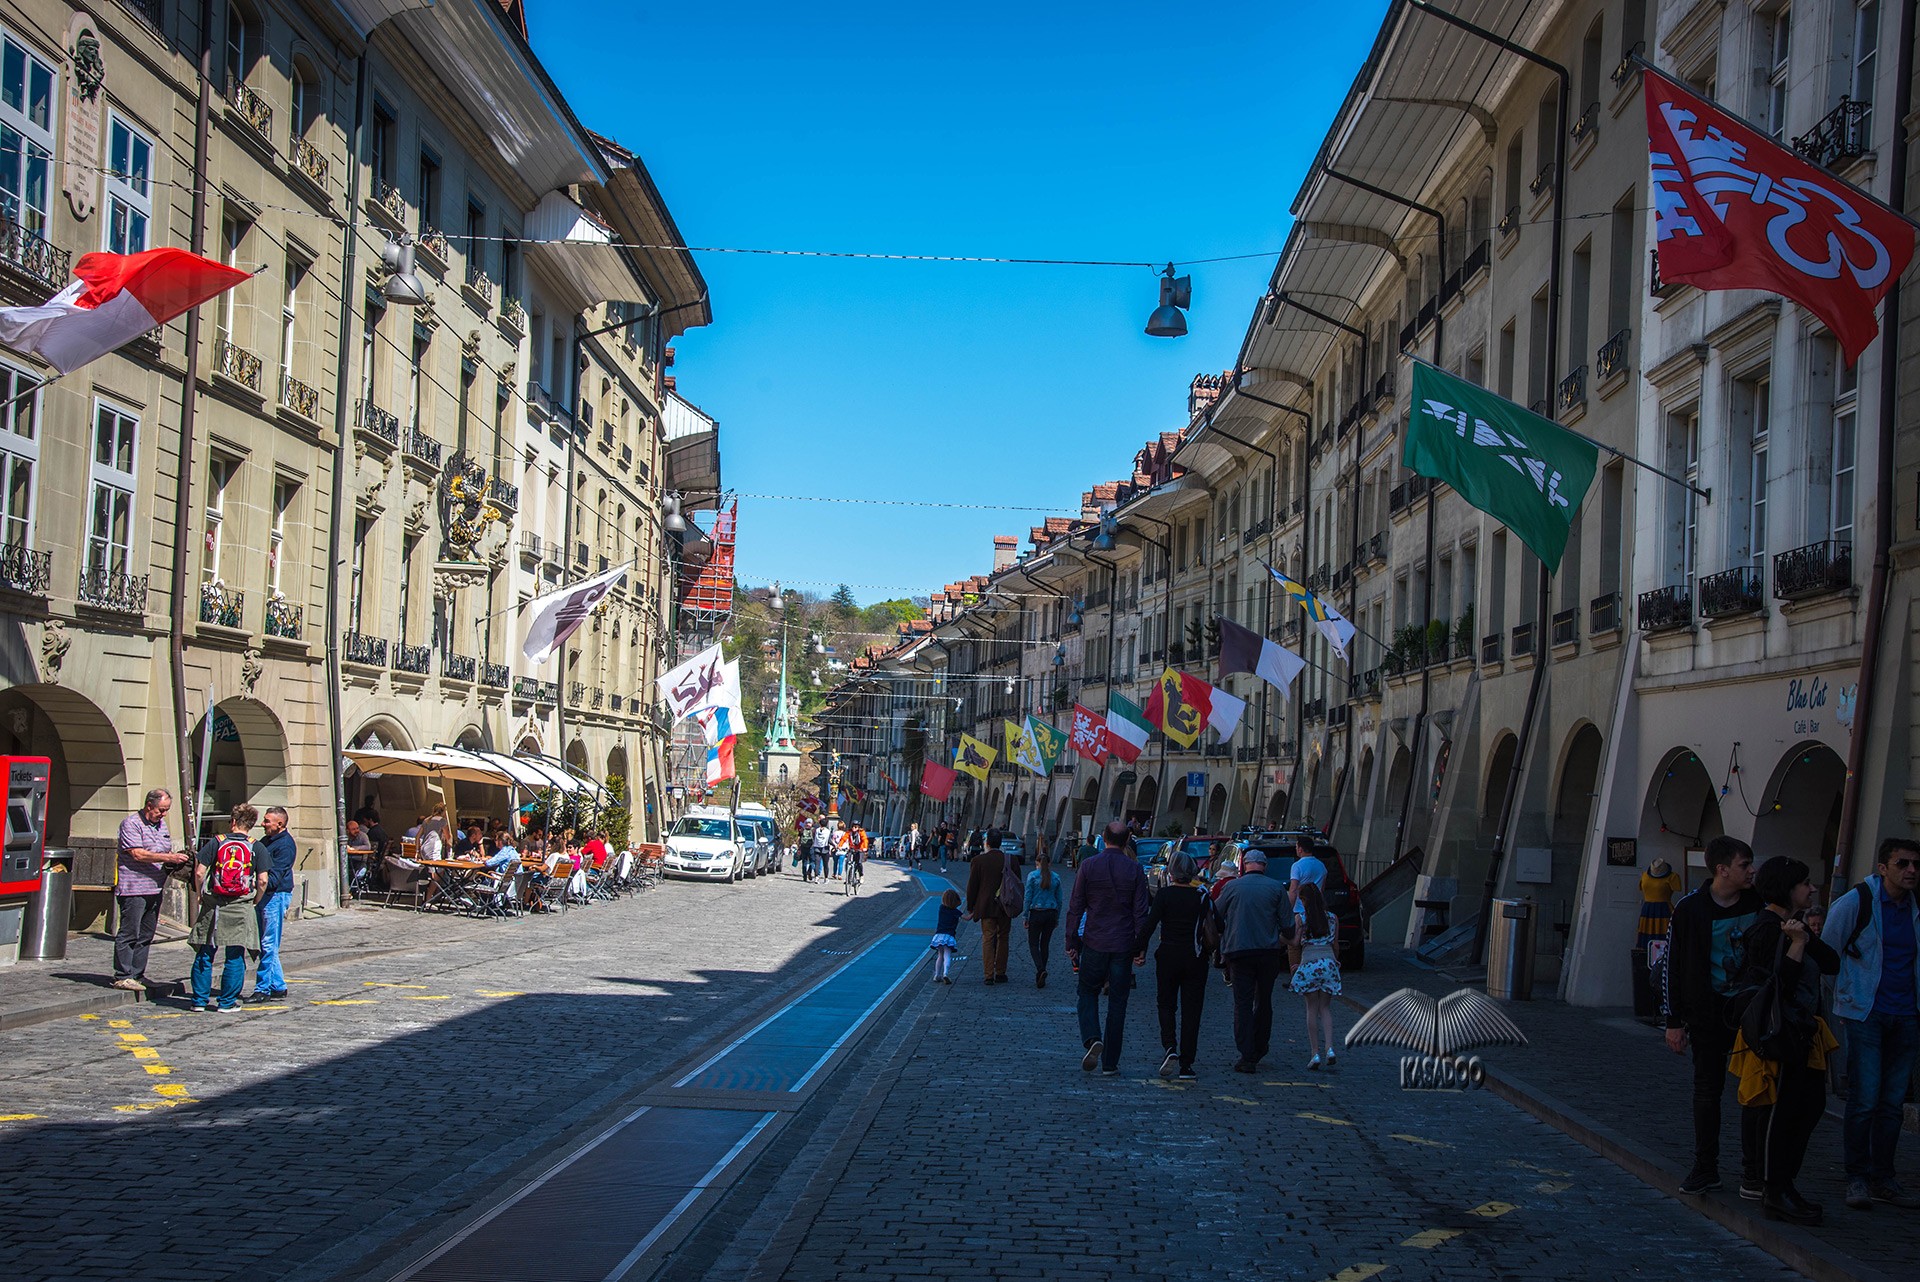 Kramgasse ulica-istorijski centar grada Berna u Švajcarskoj